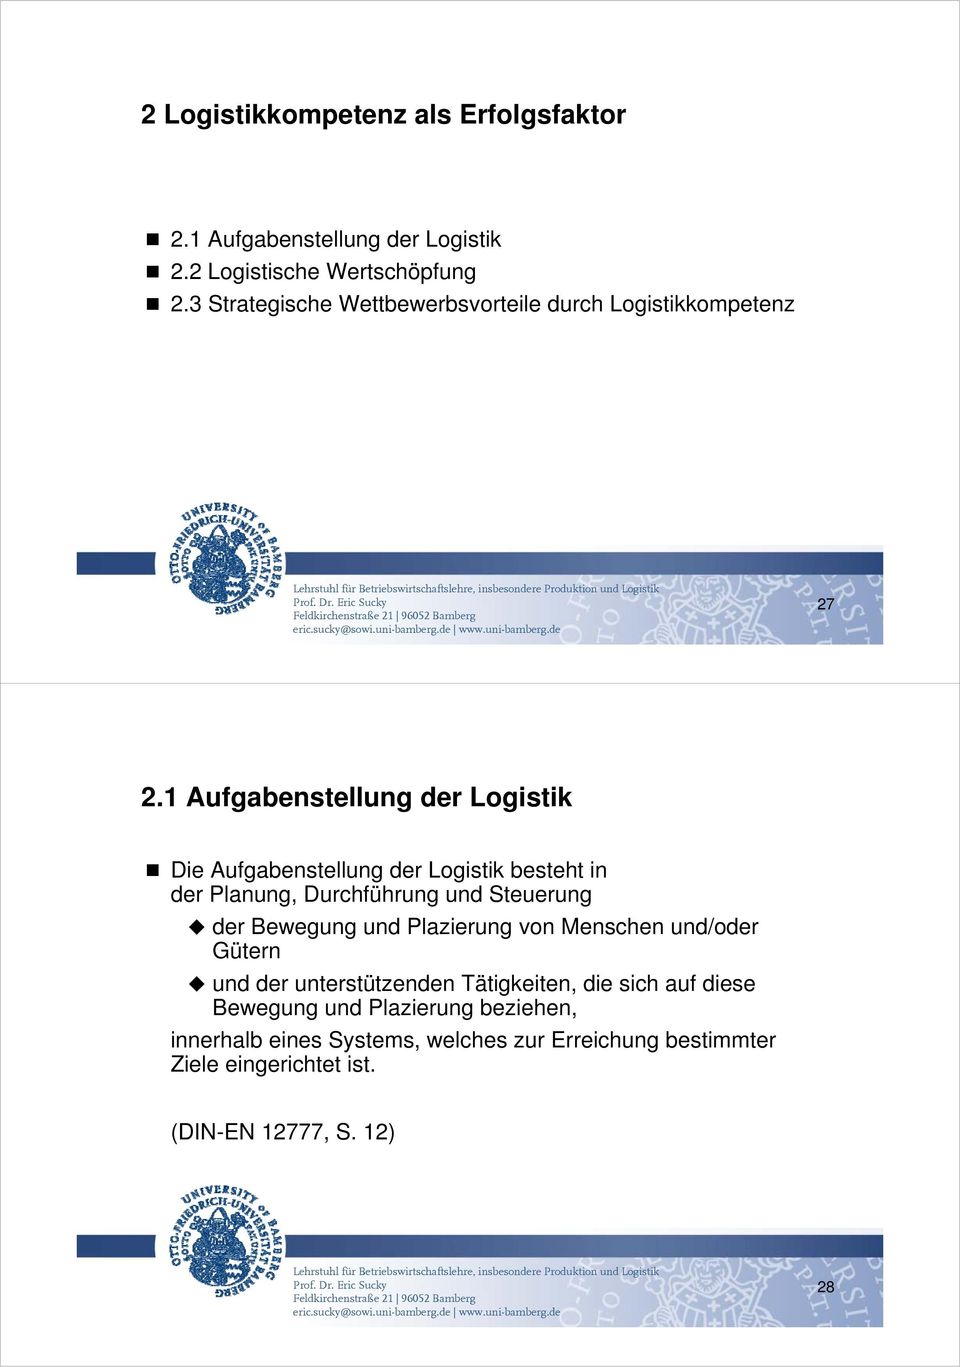 1 Aufgabenstellung der Logistik Die Aufgabenstellung der Logistik besteht in der Planung, Durchführung und Steuerung der Bewegung und